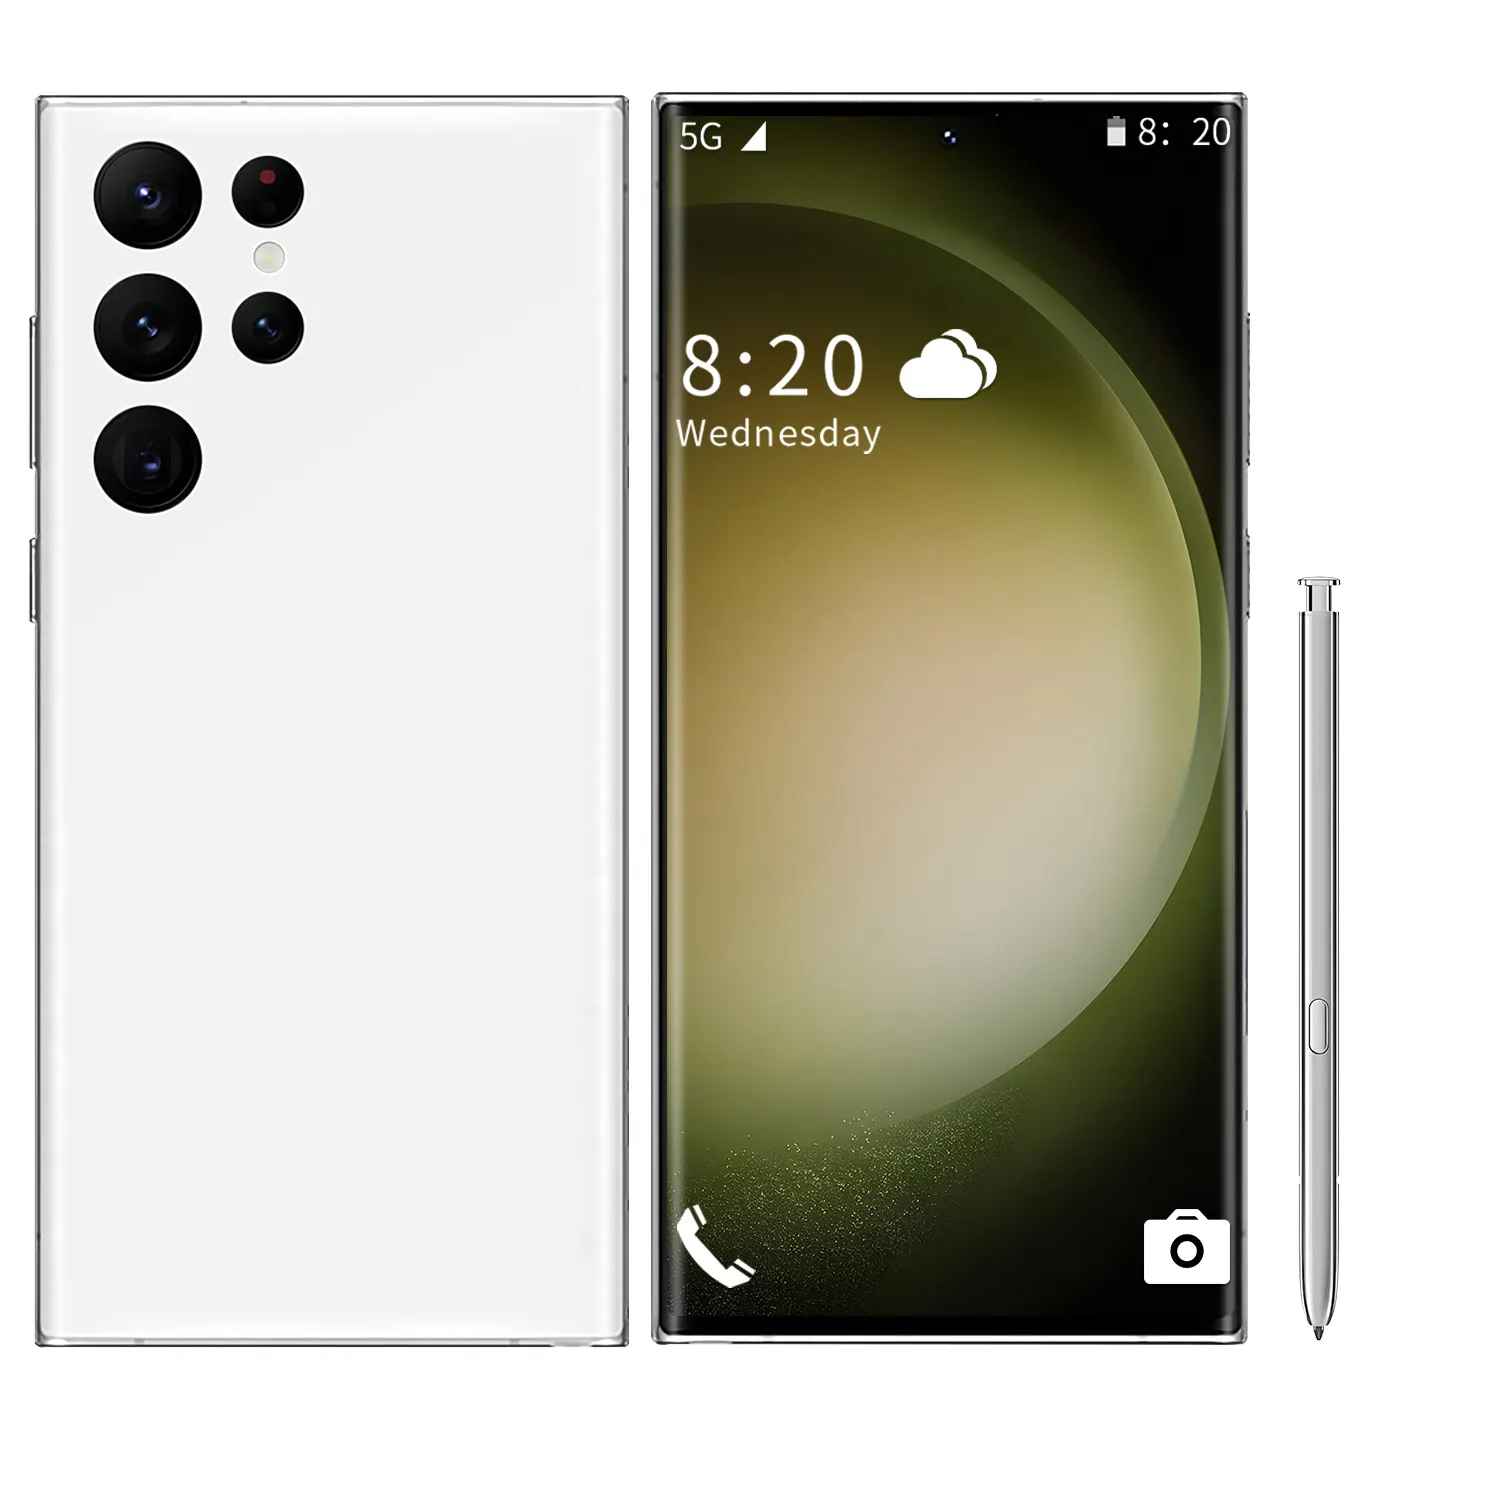 Yeni orijinal S23UItra yüksek çözünürlüklü 7.2 inç yüz tanıma Smartphone 16GB + 1TB uzun bekleme süresi Android cep telefonu